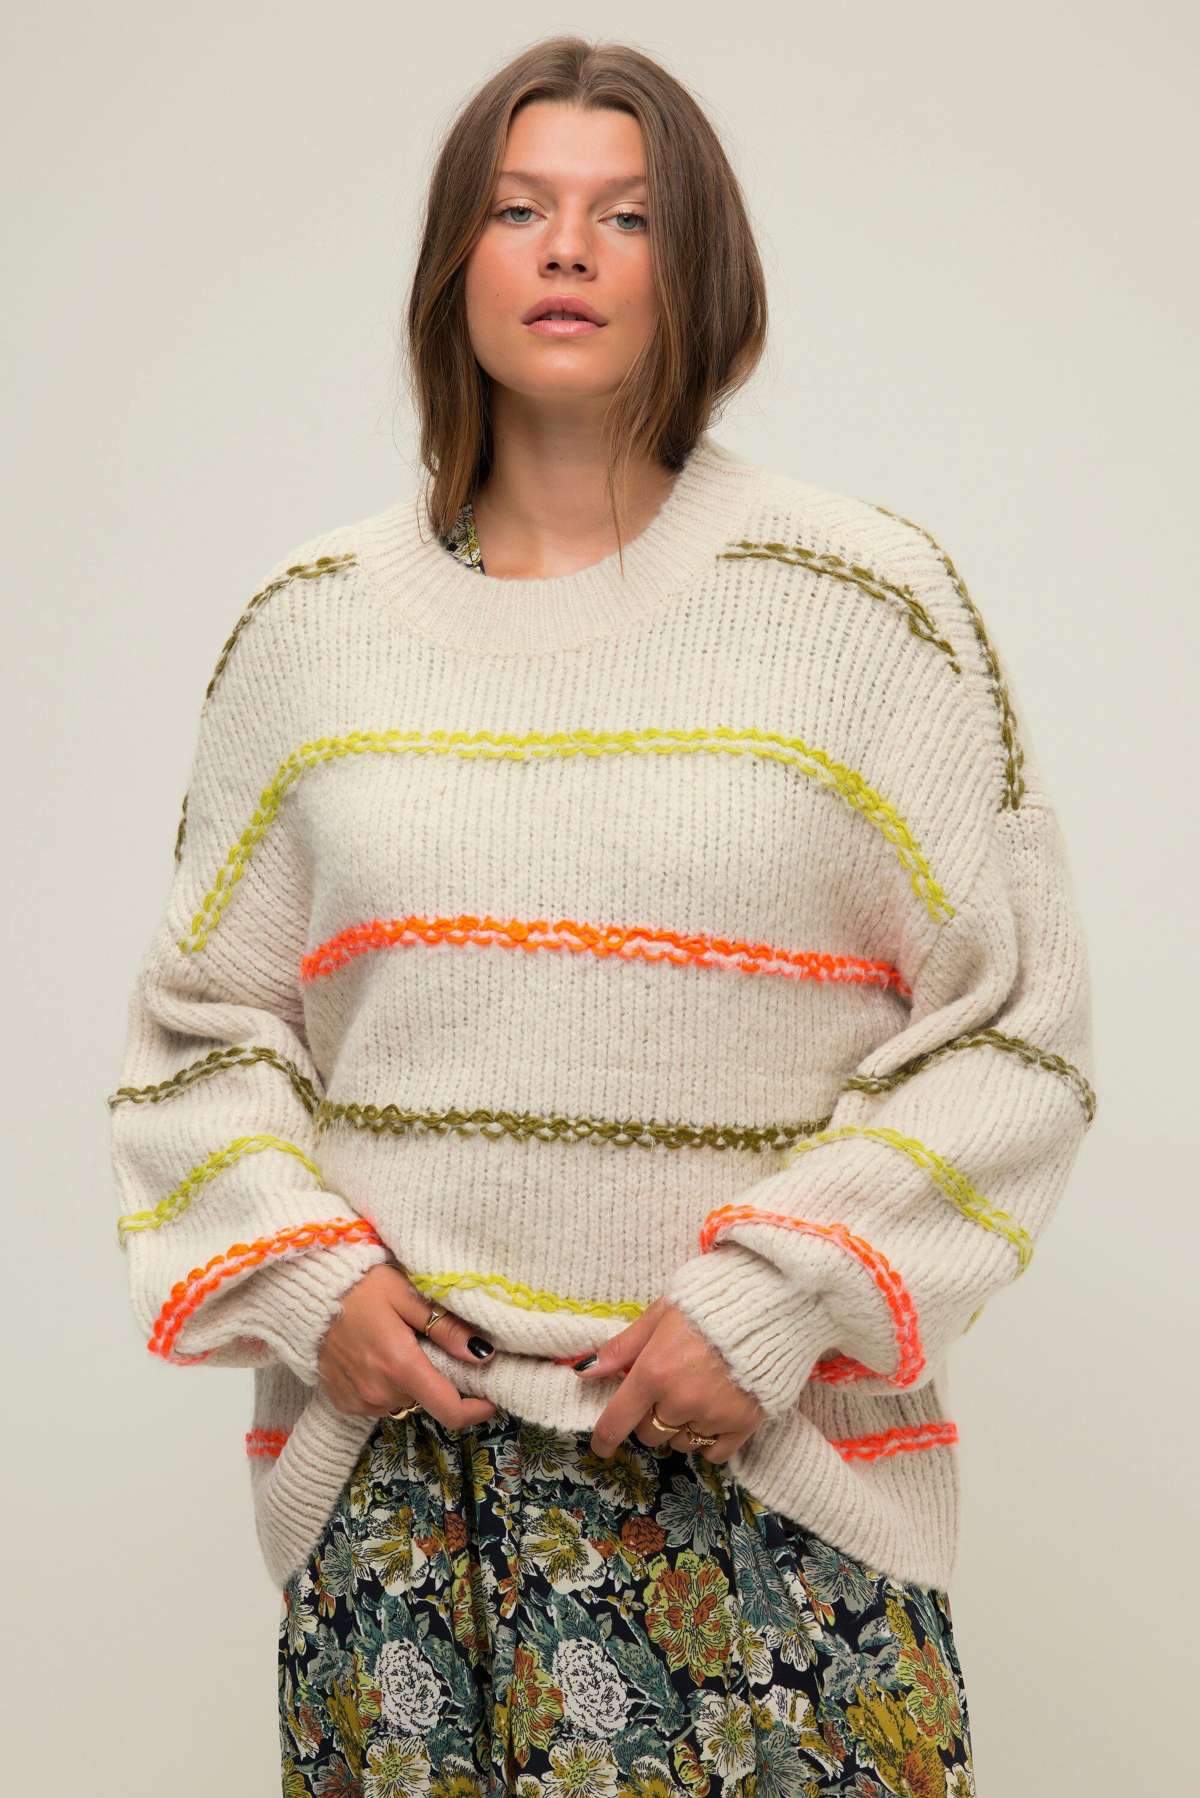 Вязаный свитер-пуловер оверсайз крупной вязки в цветную полоску вокруг шеи